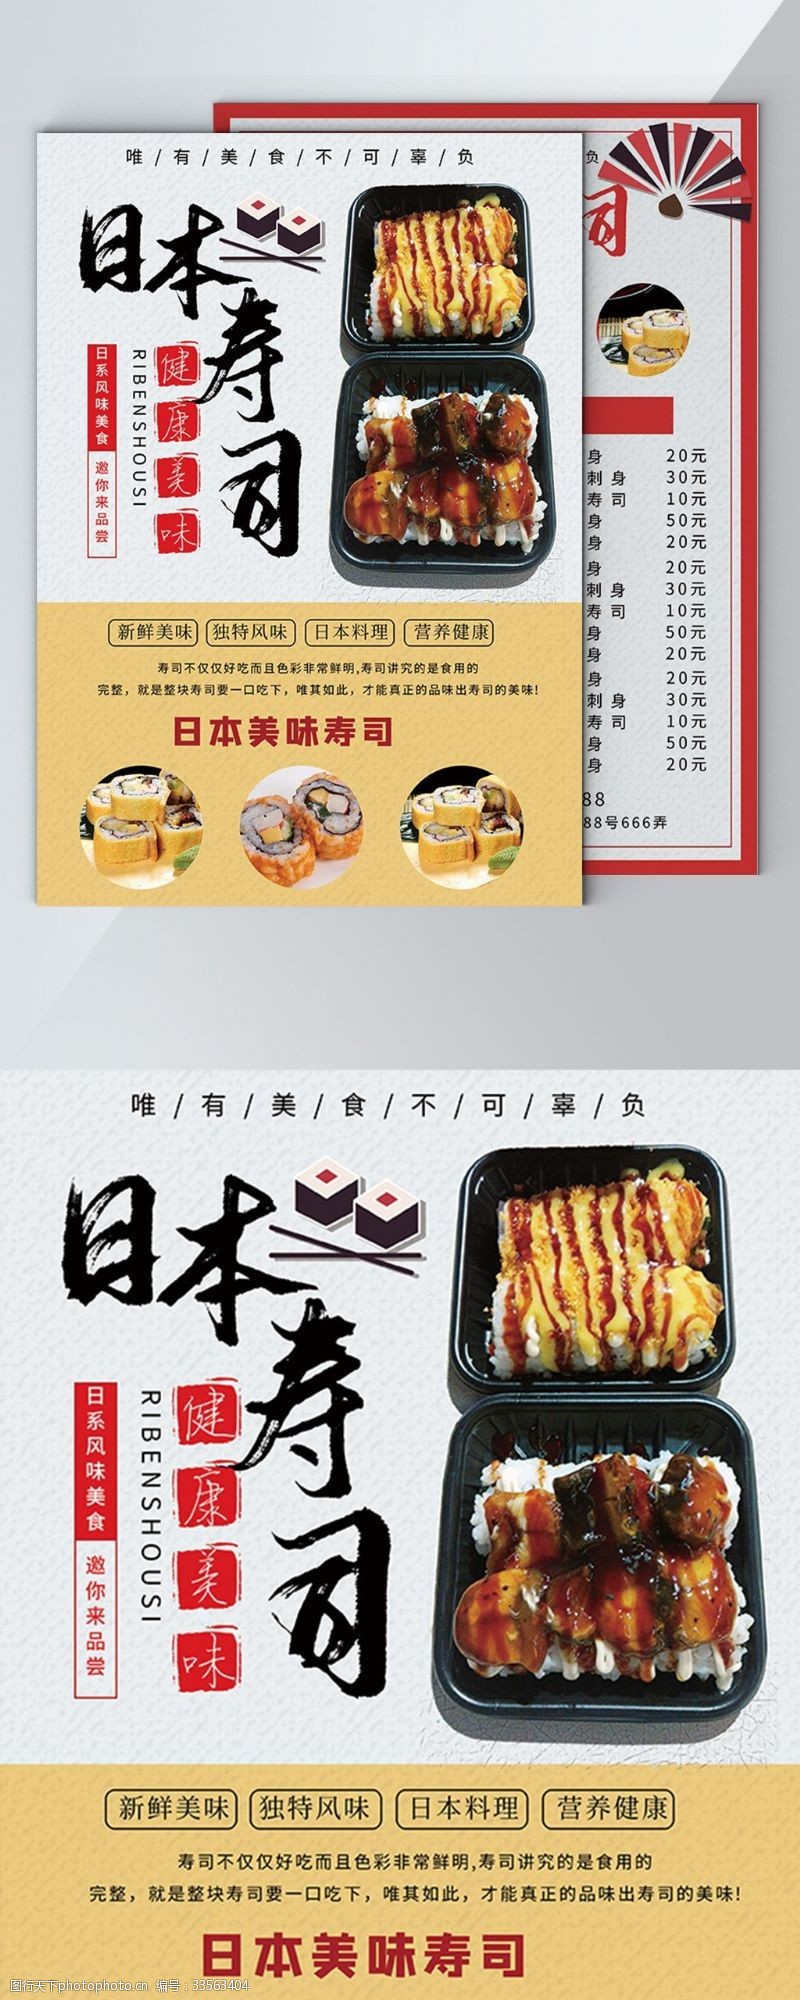 寿司日本料理菜单图片免费下载 寿司日本料理菜单素材 寿司日本料理菜单模板 图行天下素材网